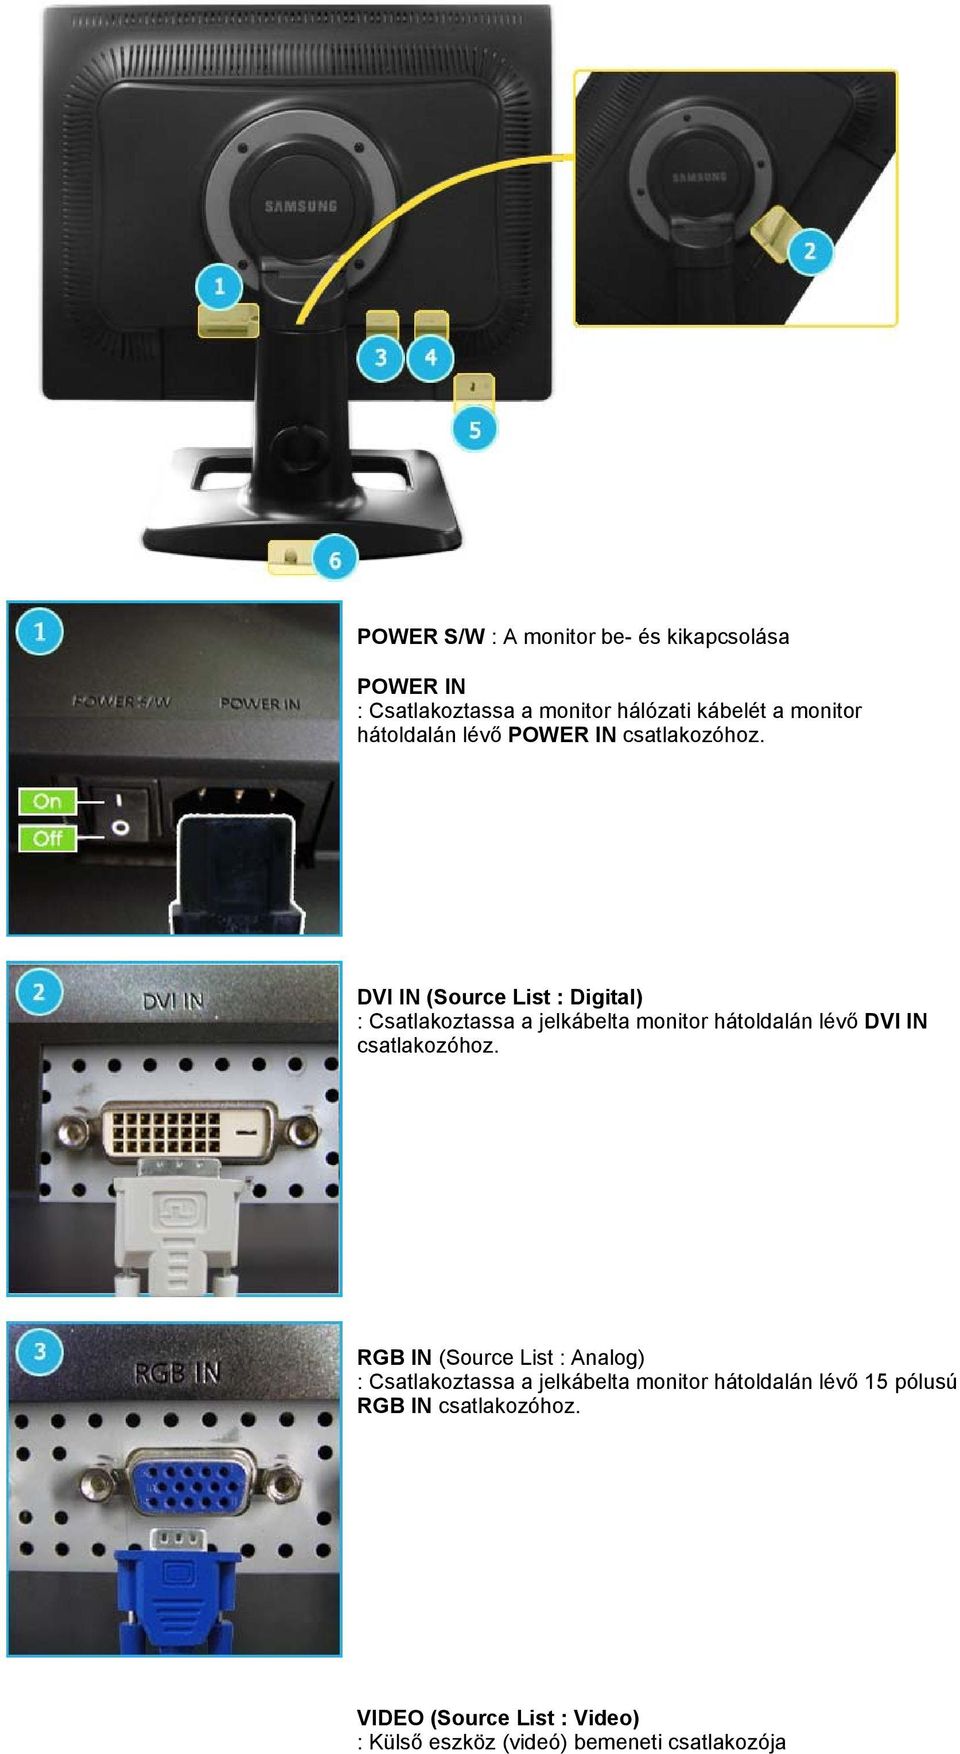 DVI IN (Source List : Digital) : Csatlakoztassa a jelkábelta monitor hátoldalán lévő DVI IN csatlakozóhoz.